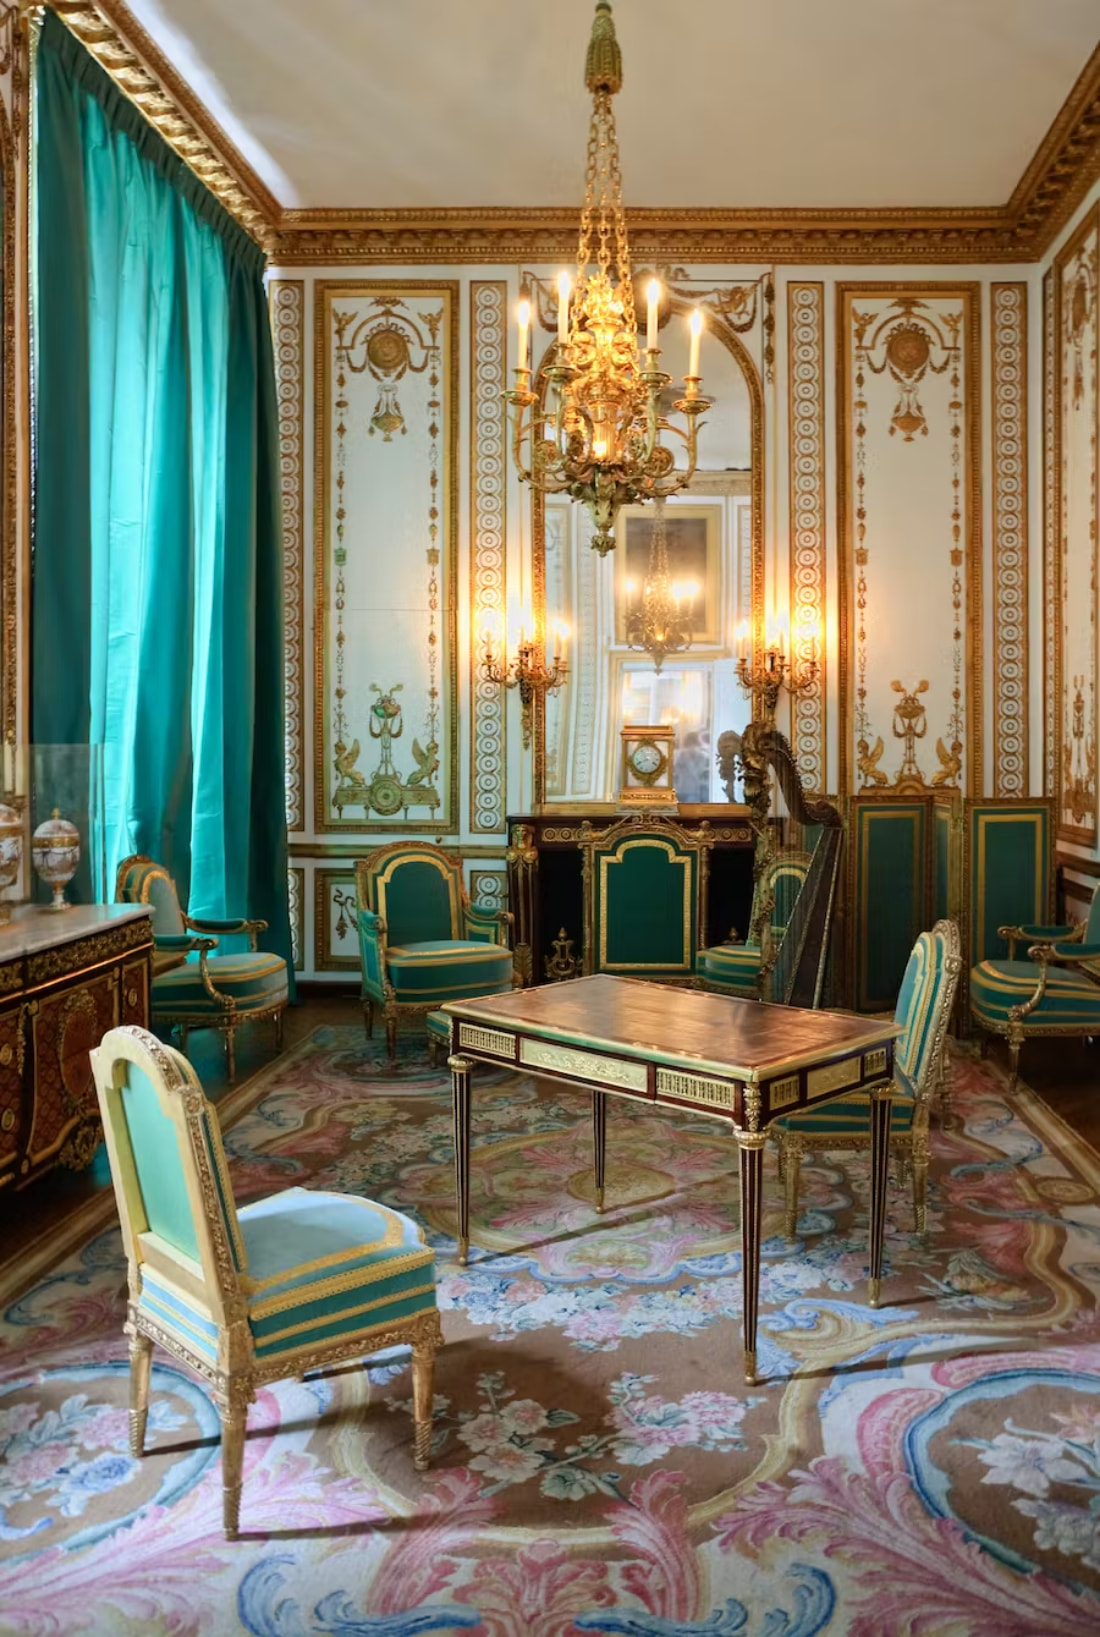 Không gian nội thất sang trọng tại Salon Doré của Marie Antoinette mang đặc trưng thời đại Louis XVI